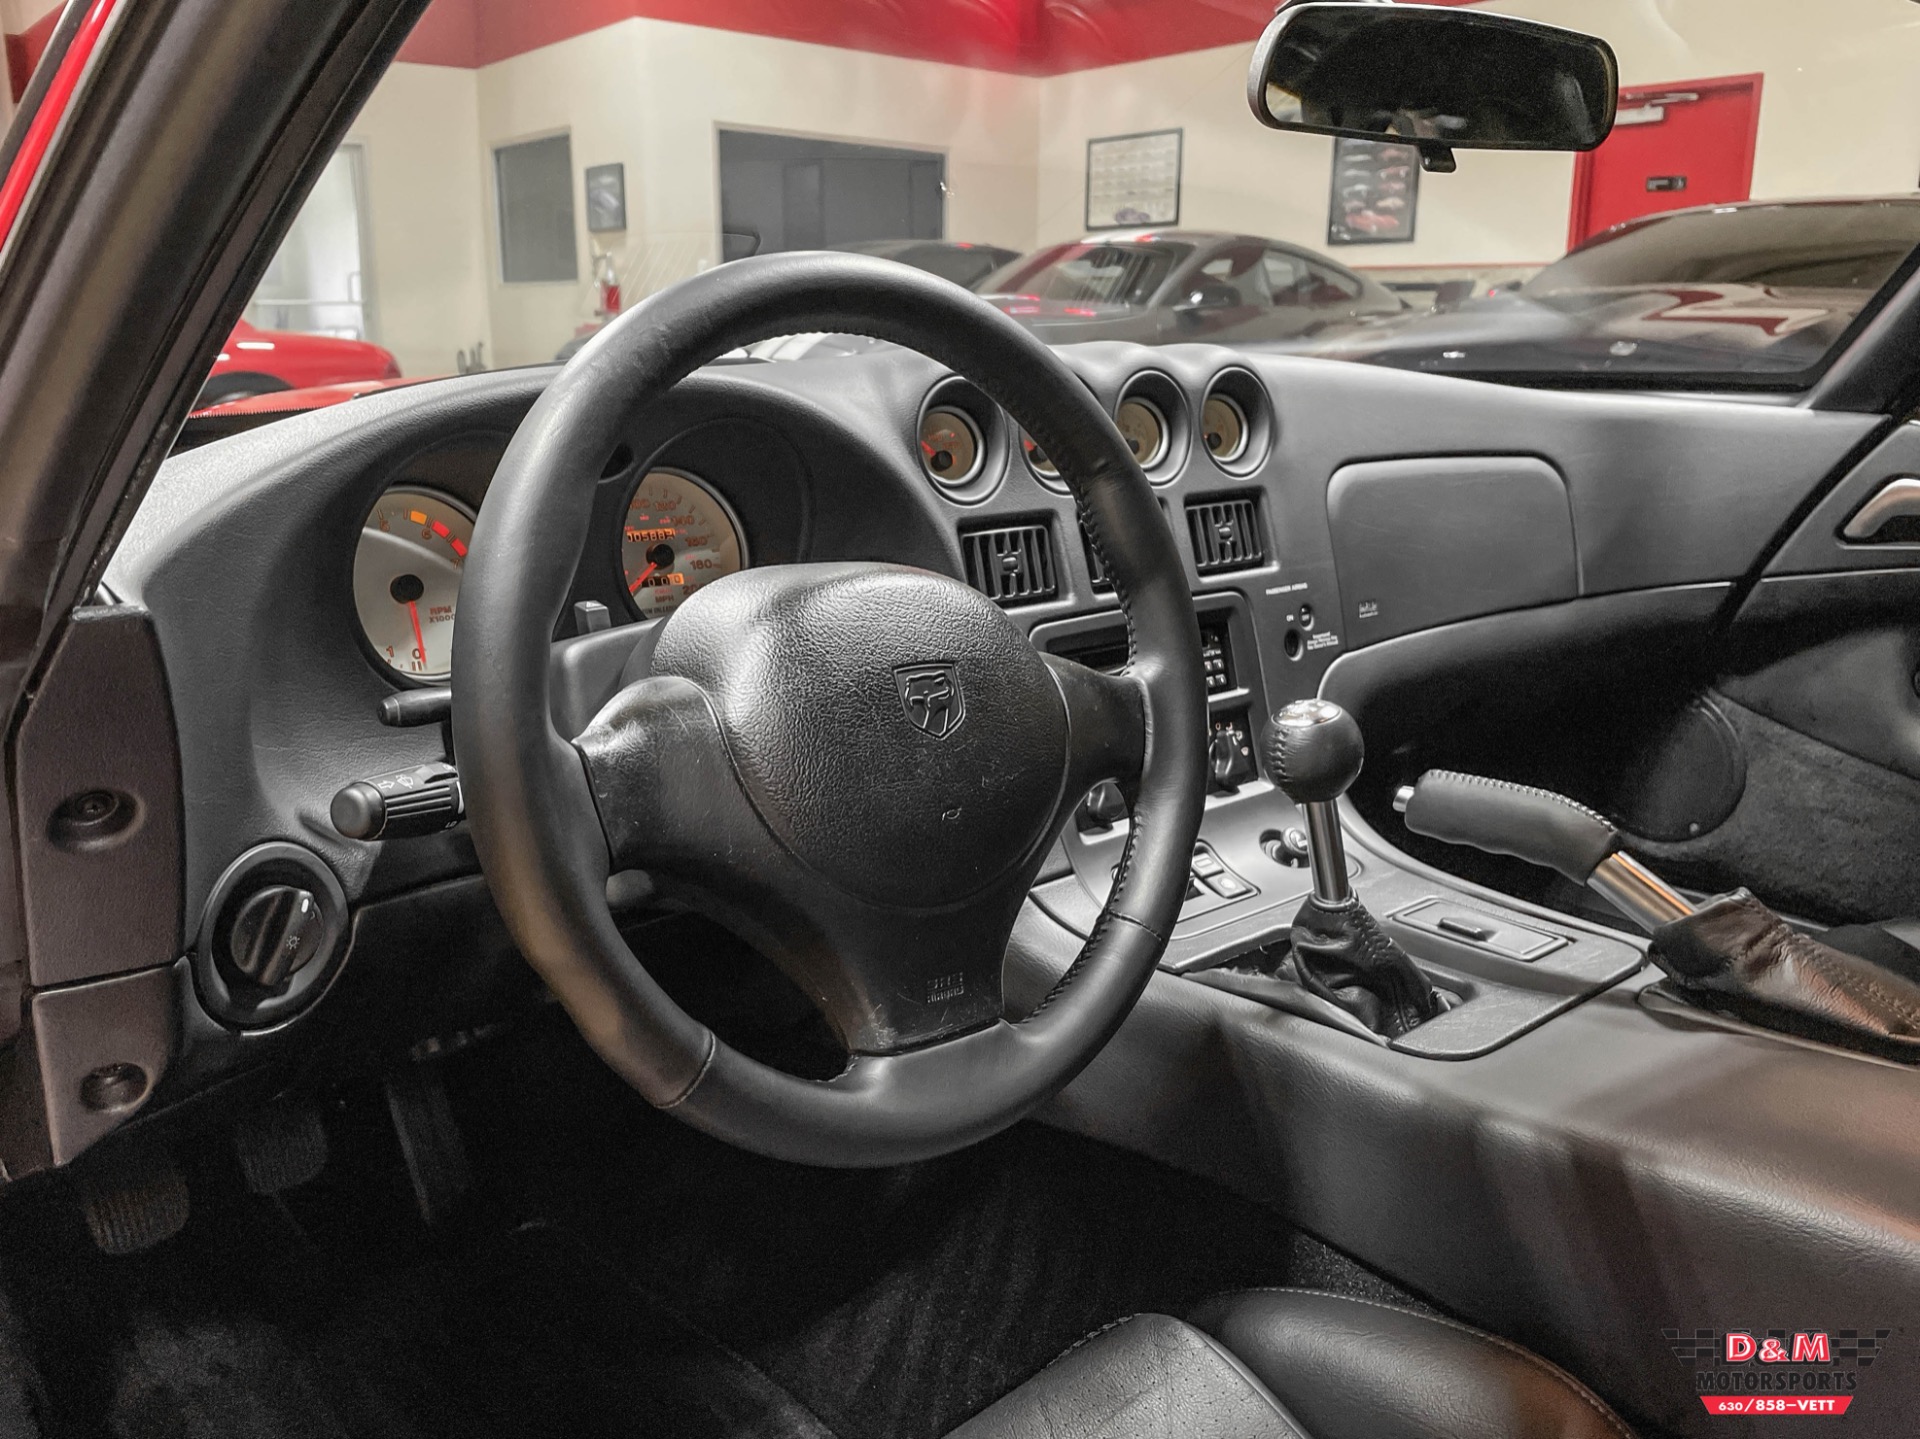 Used 2002 Dodge Viper GTS | Glen Ellyn, IL